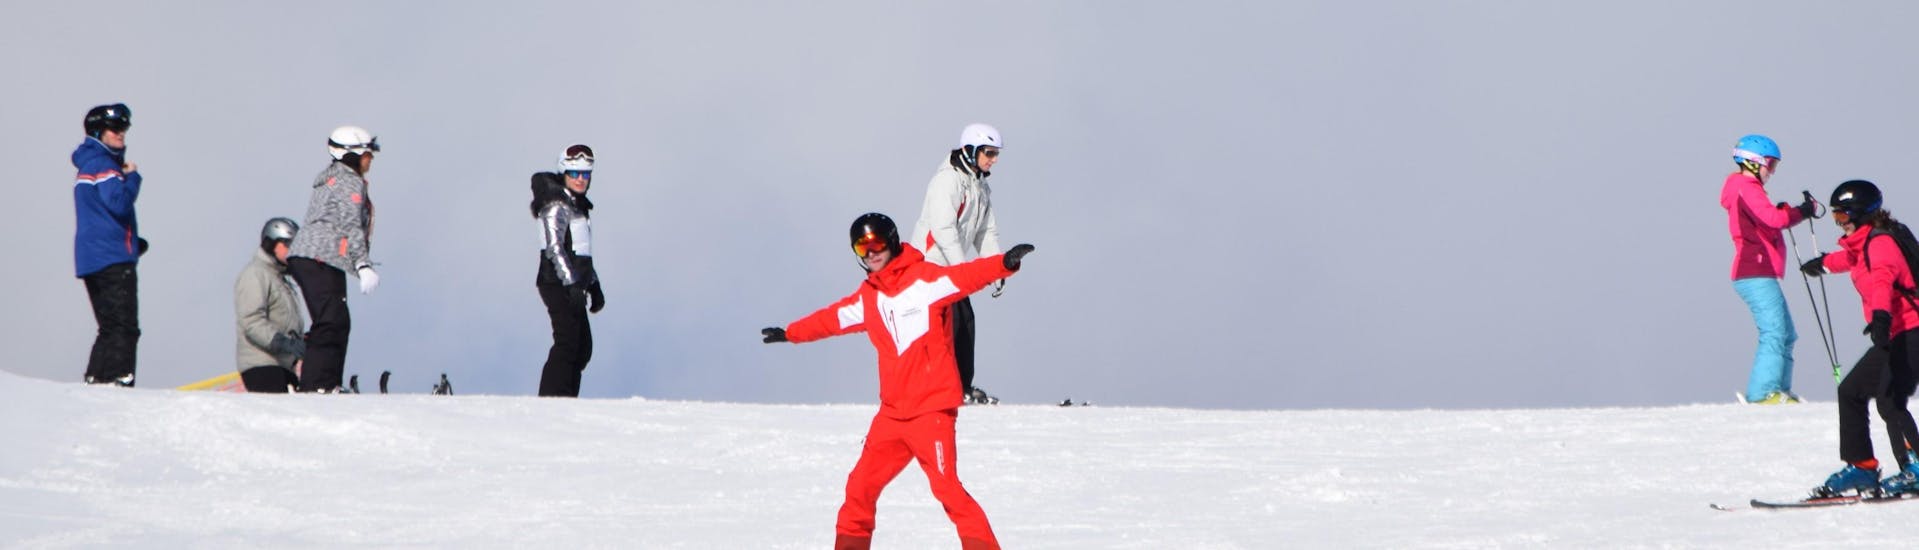 Opfriscursus voor gevorderden (vanaf 15 jaar) met Skischule Snowsports Westendorf.